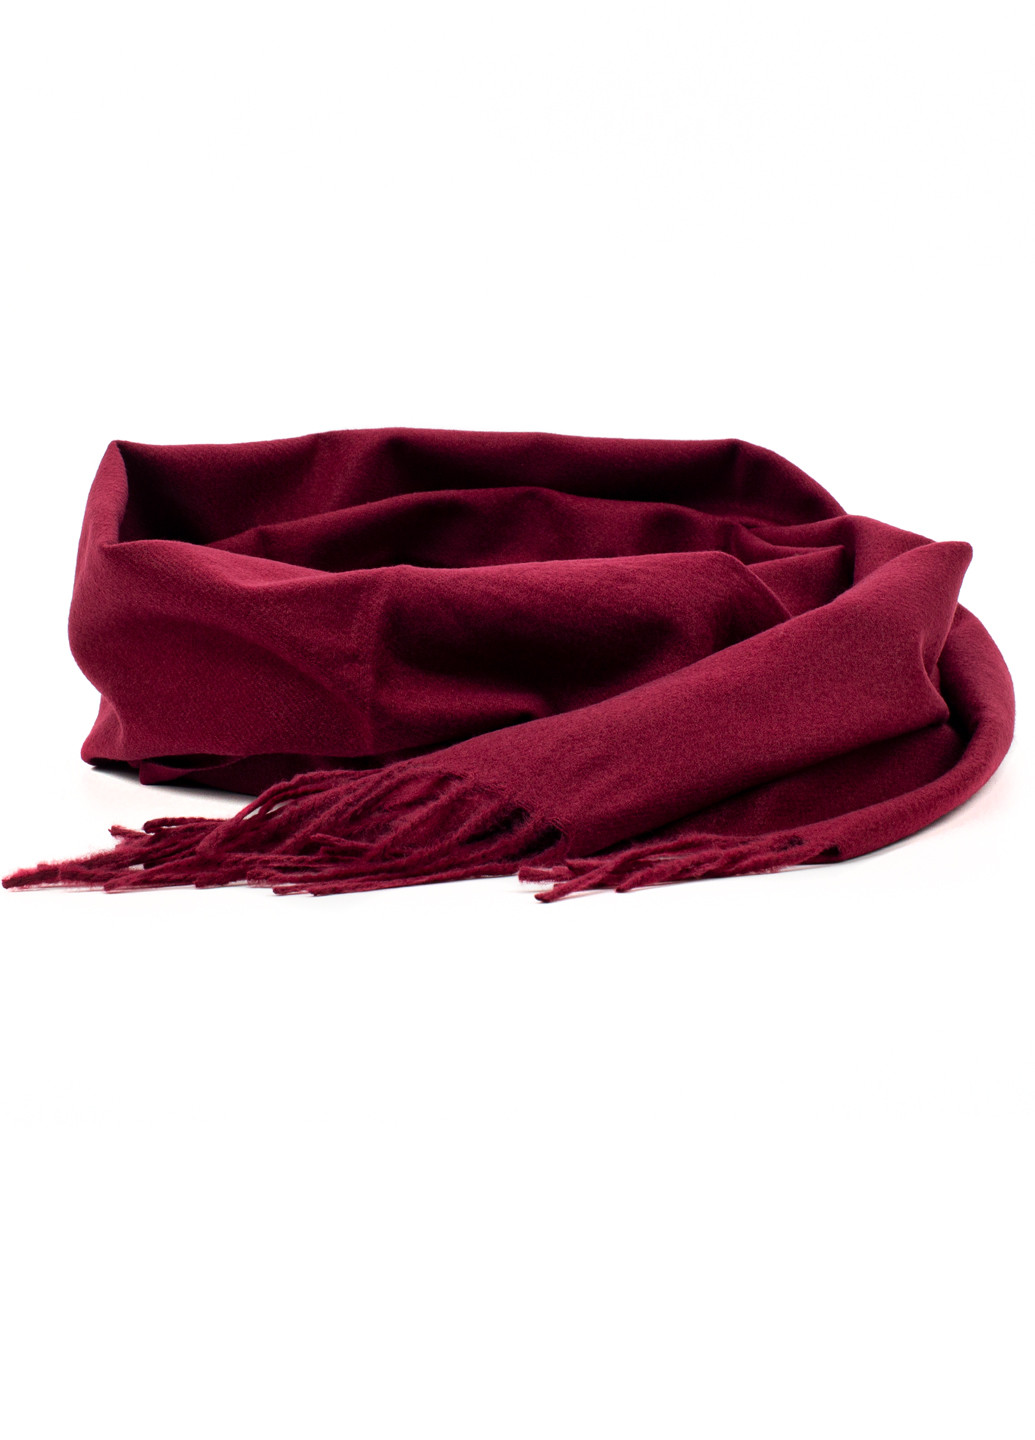 Женский однотонный шарф с бахромой, бордовый Corze gs-109 (269449230)